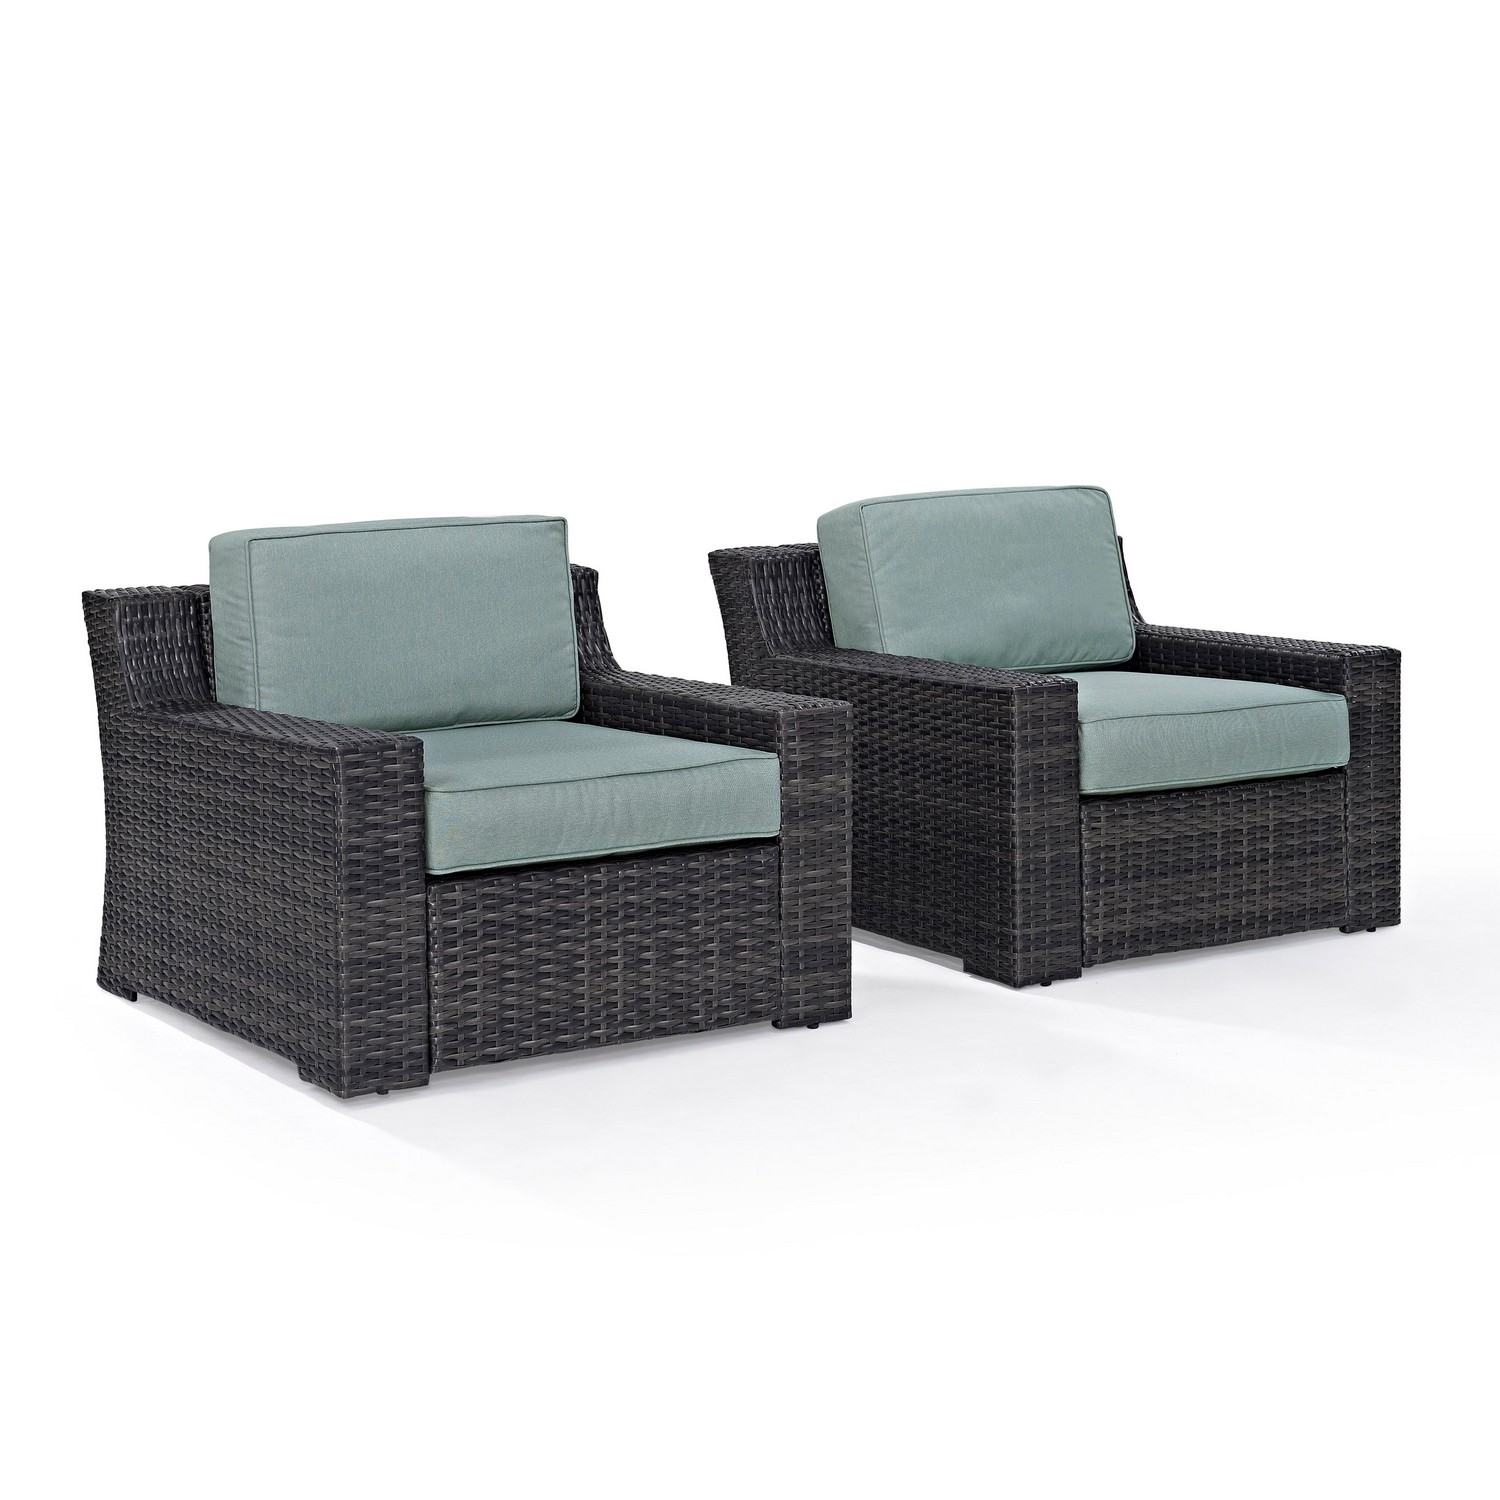 Crosley Beaufort Outdoor Wicker Chair - Set of 2 - Mist/Brown